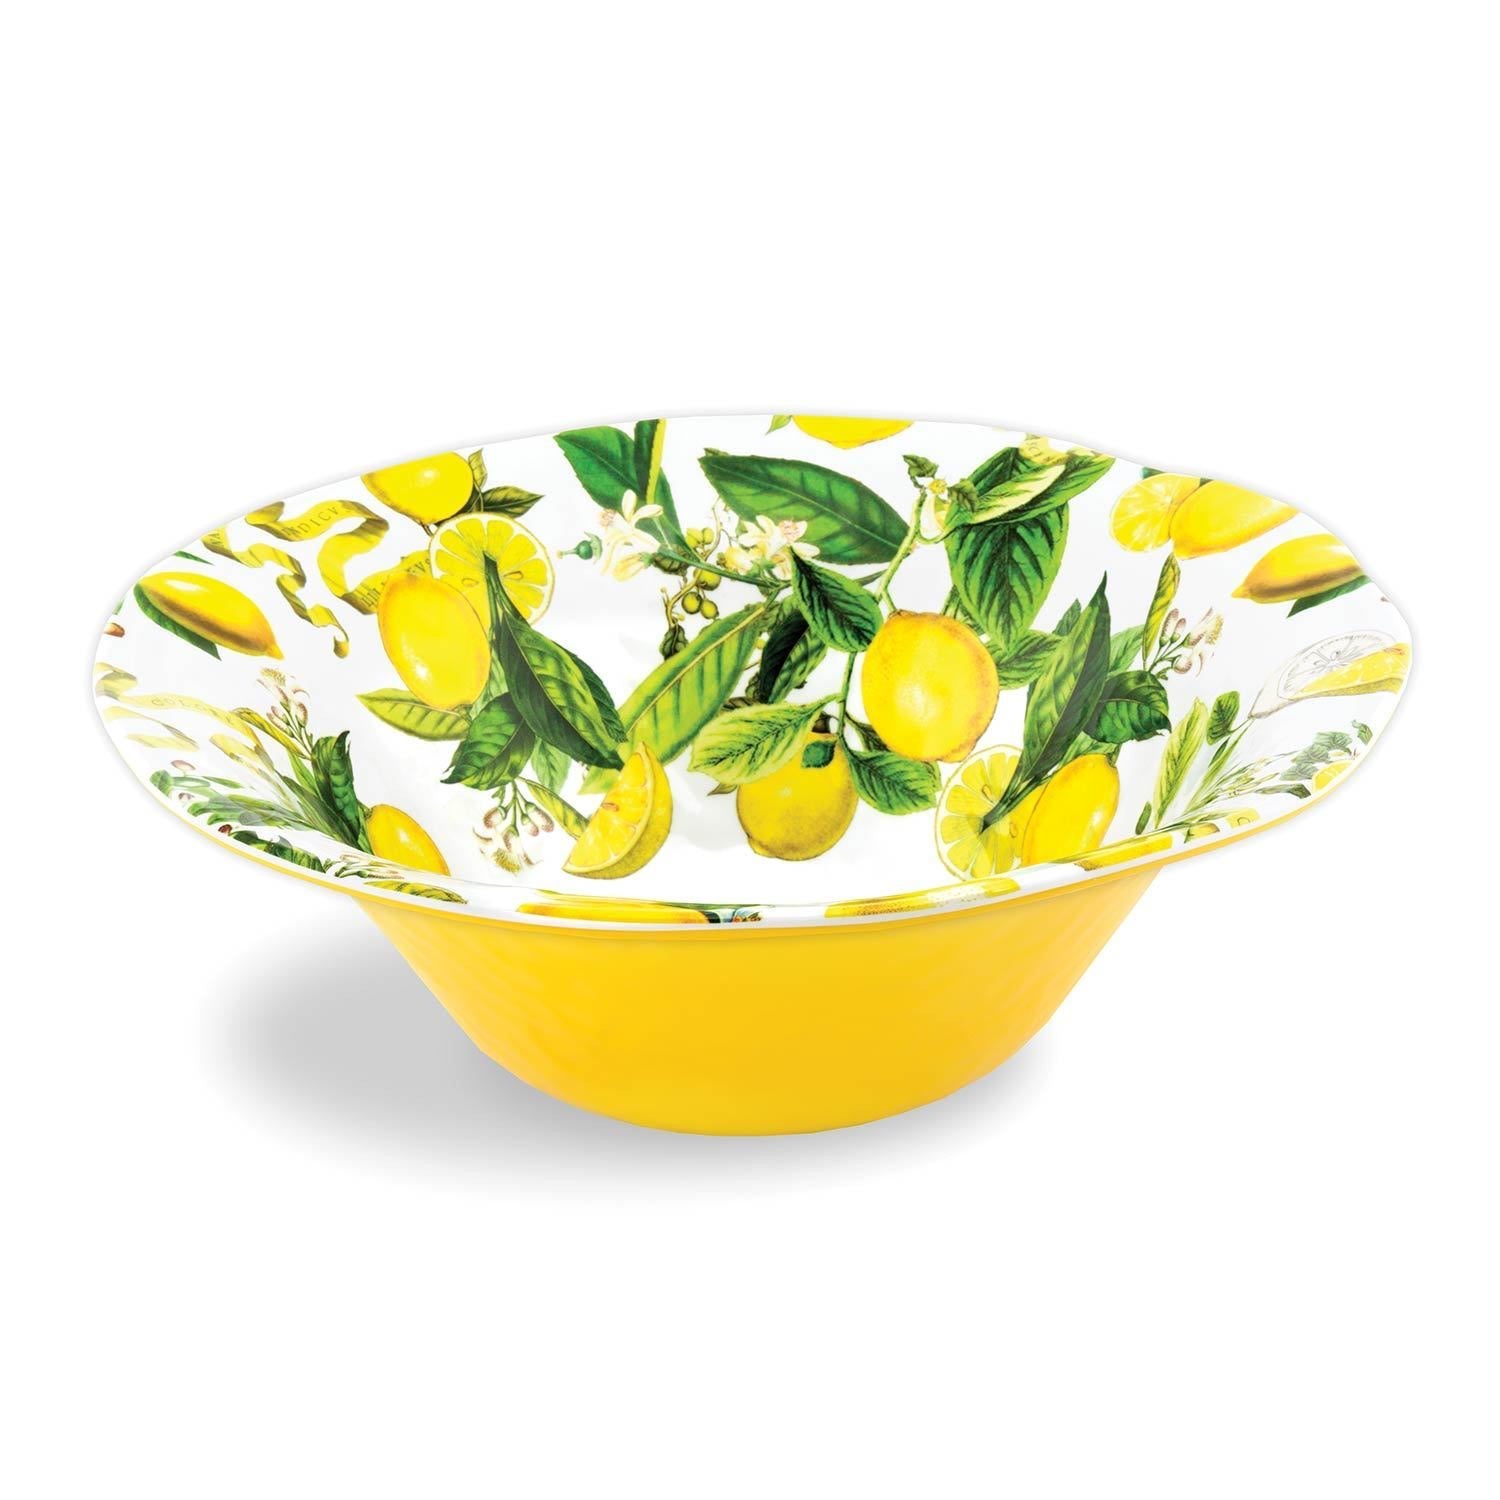 Lemon Basil Large Melamine Bowl    